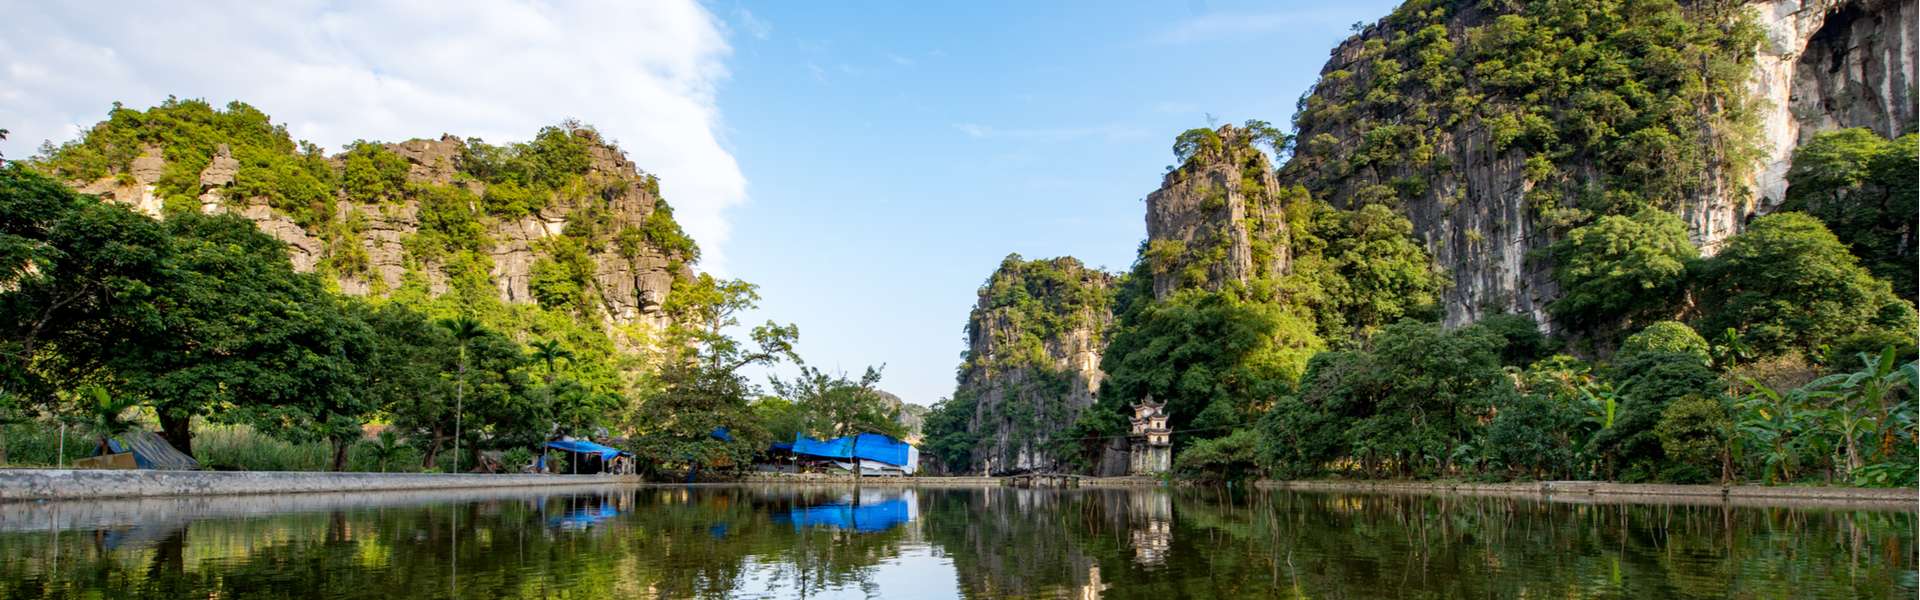 10 vườn quốc gia đẹp ngút ngàn tại Việt Nam